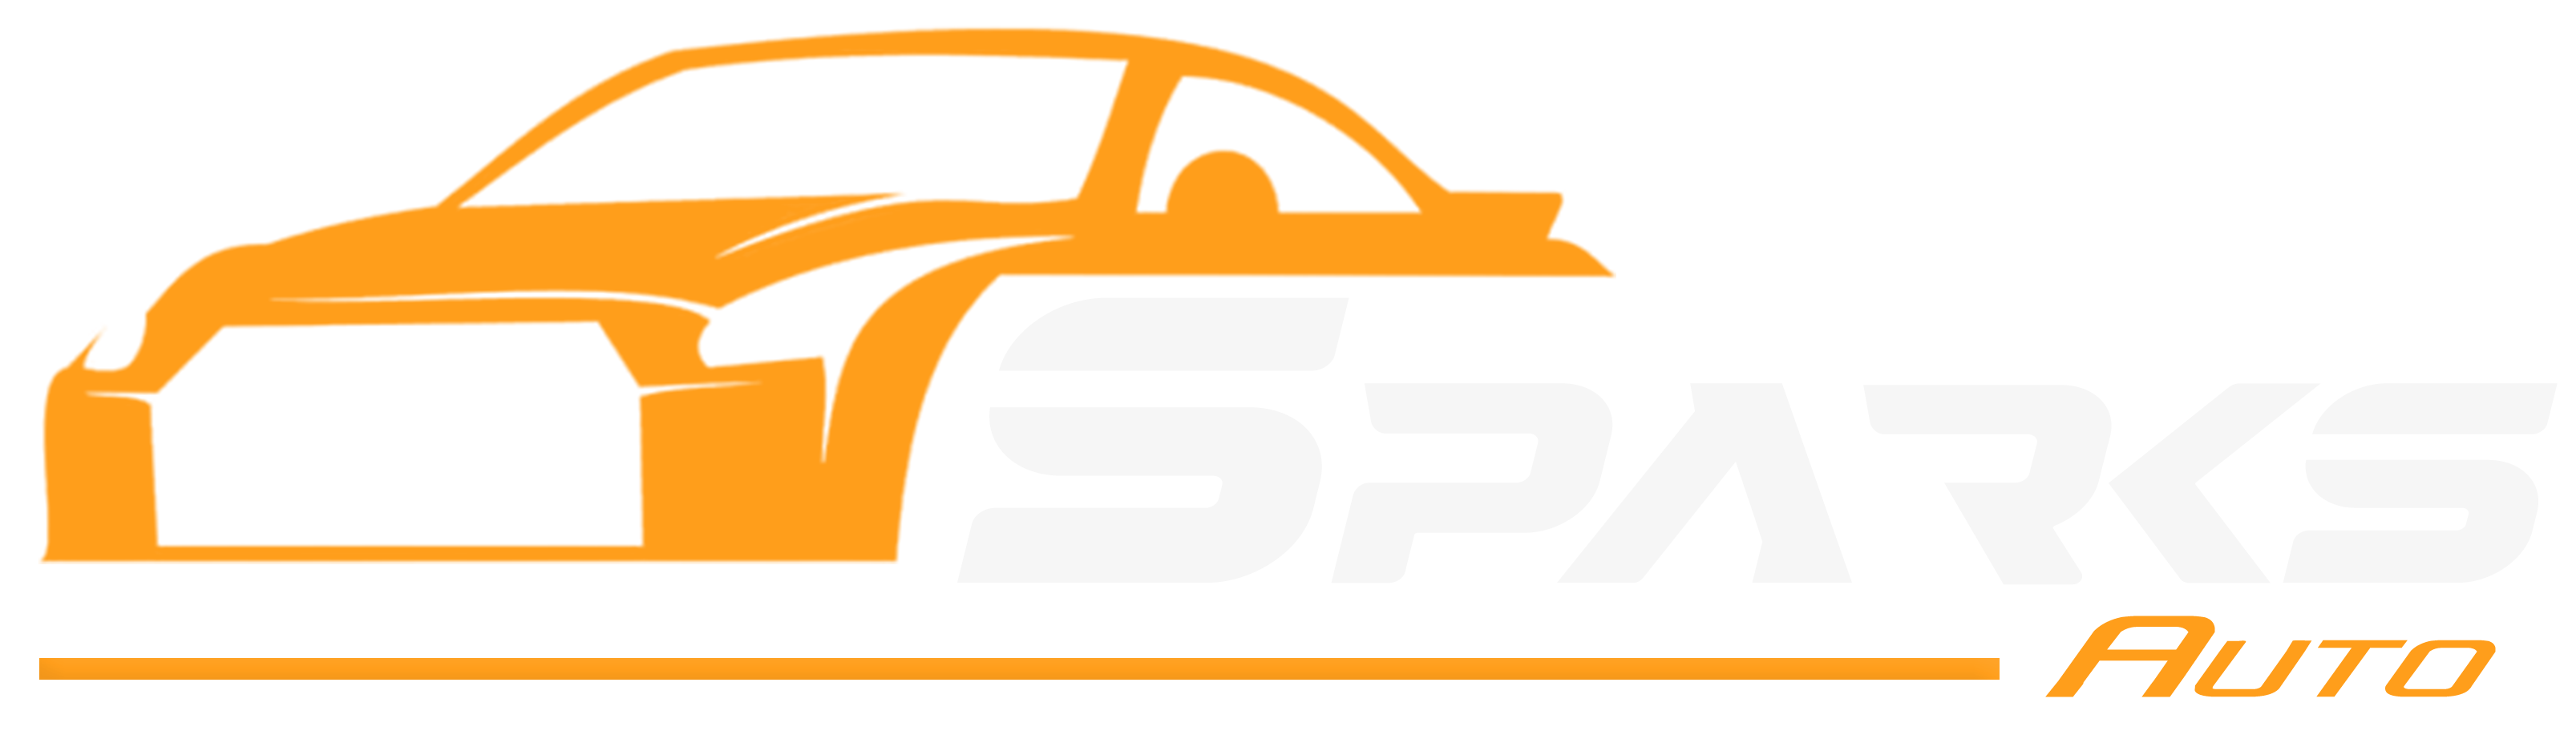 Sparks Auto